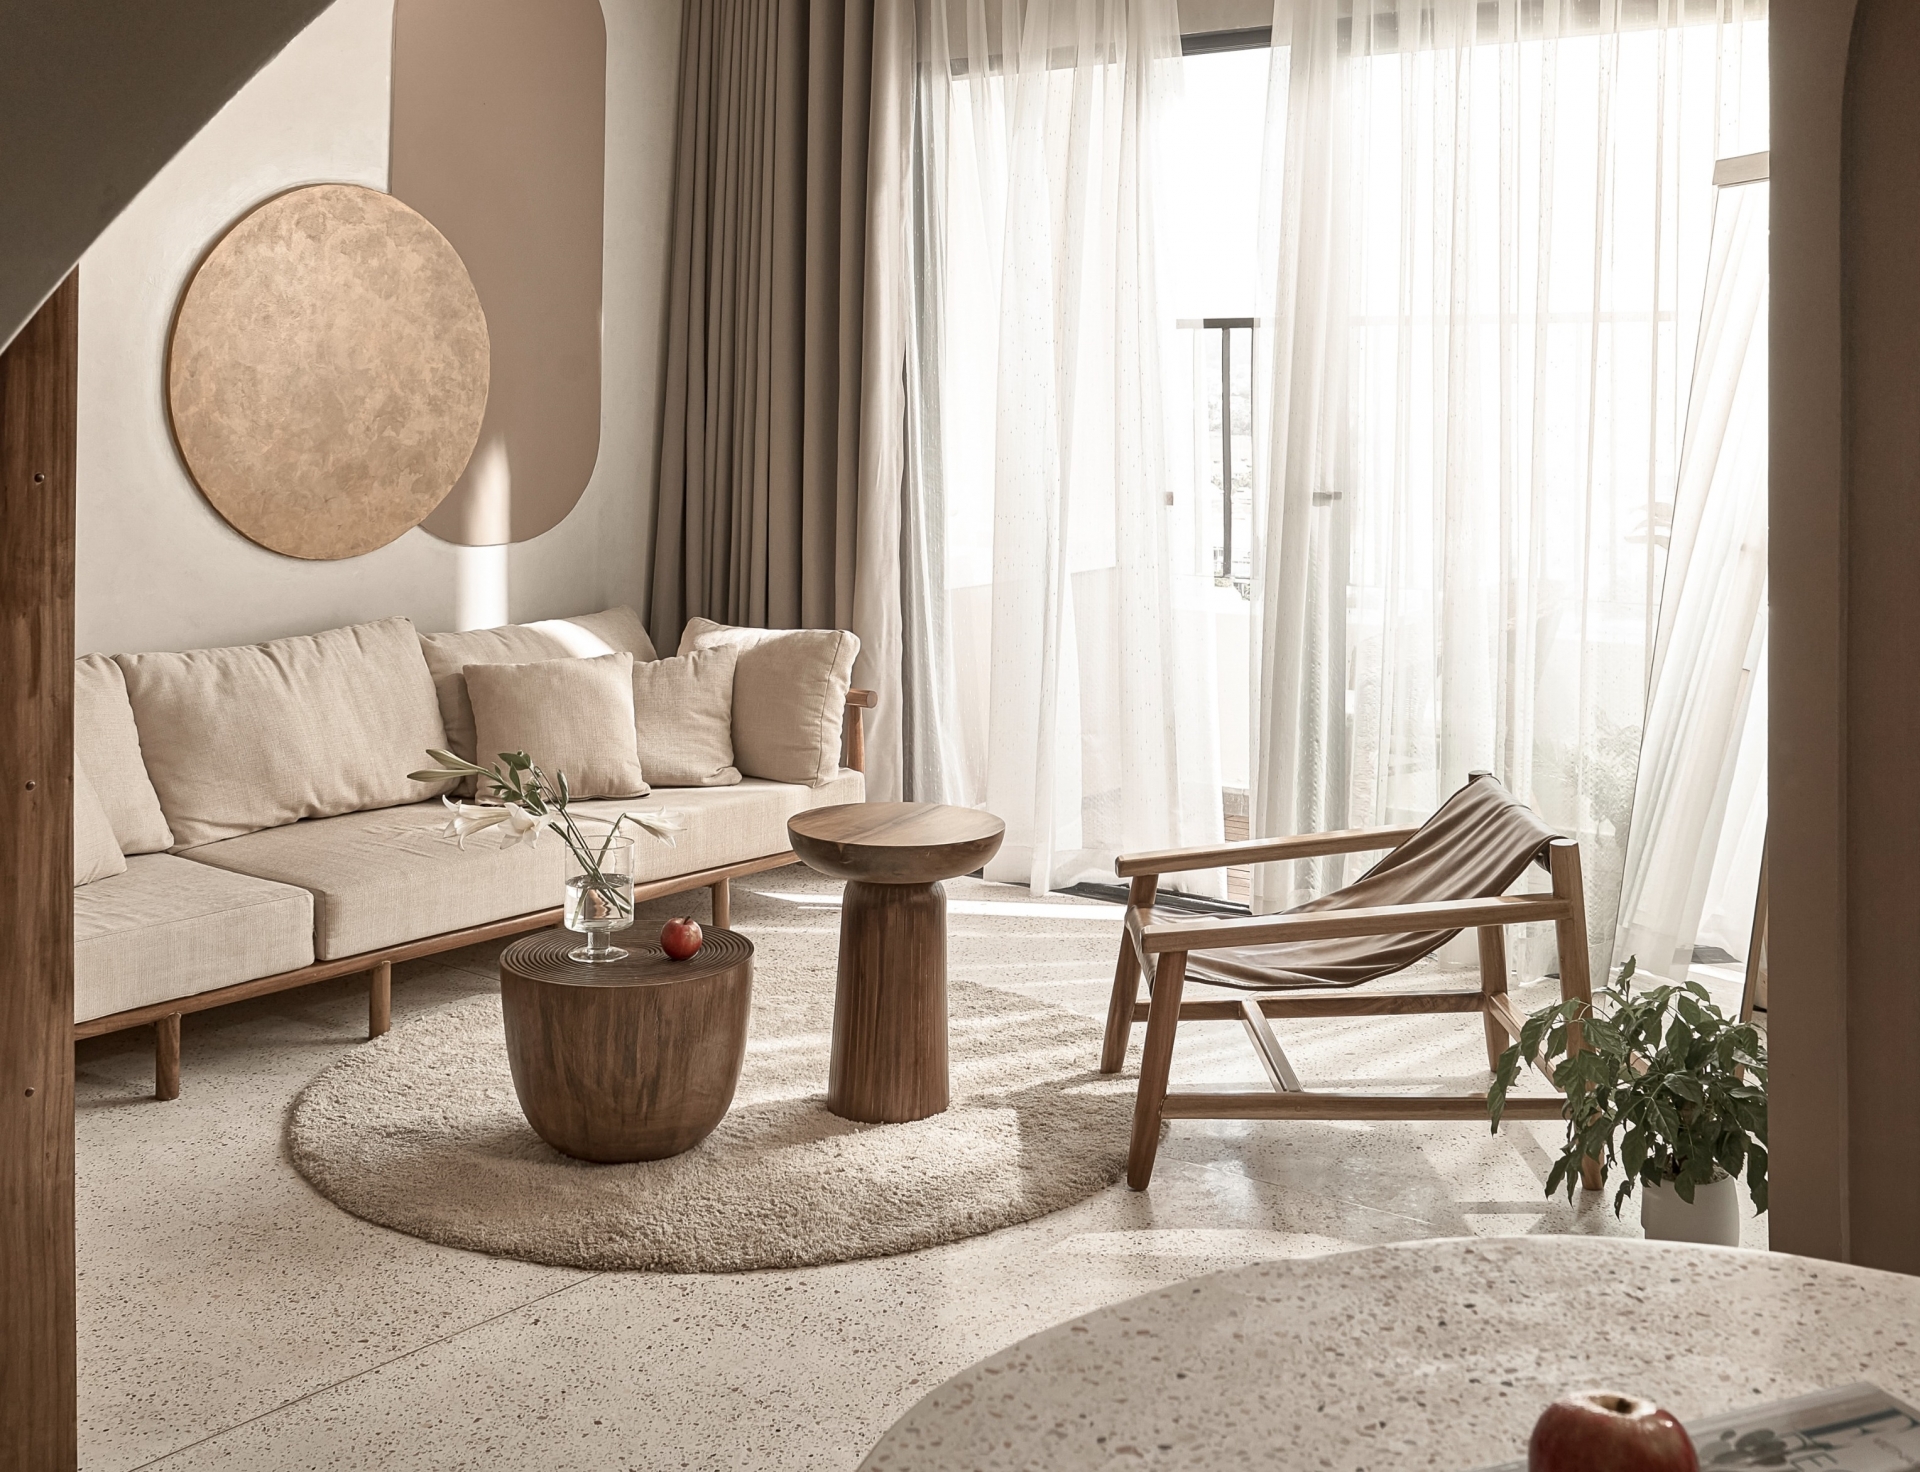 Phòng khách bố trí bên logia đầy nắng ấm với rèm che mỏng nhẹ. Ghế sofa màu be kết hợp bộ bàn nước gỗ cho vẻ đẹp mộc mạc, bố trí trên tấm thảm hình tròn êm ái.